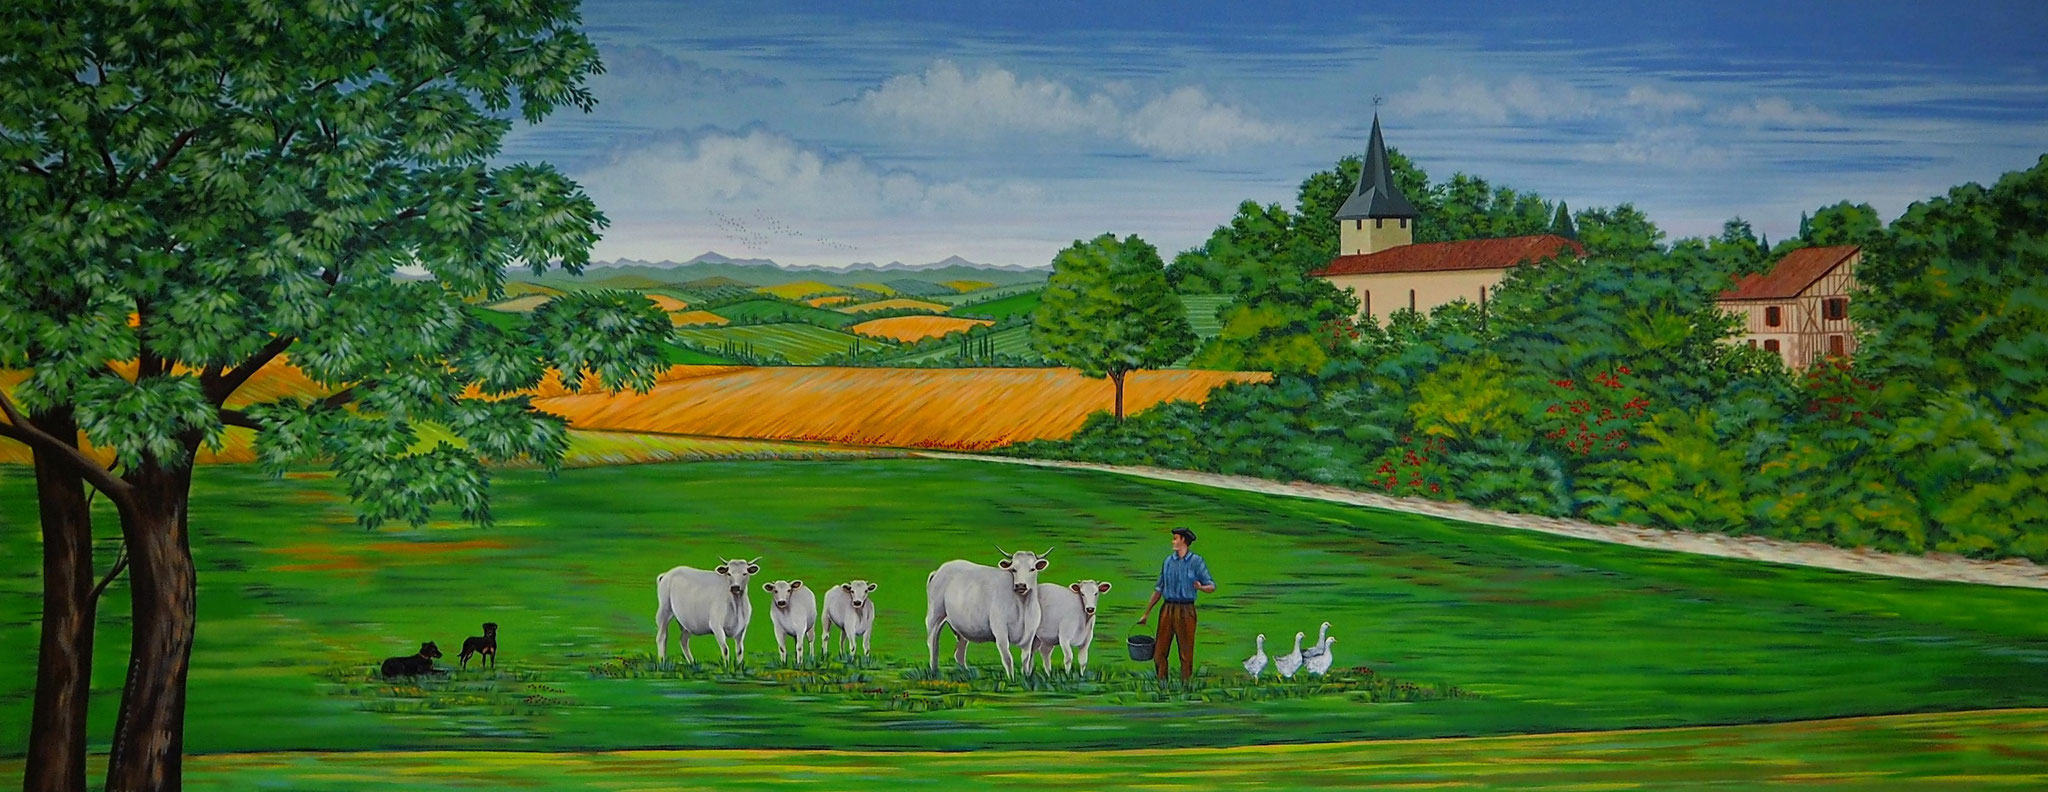 Le village de Gaujan - Peinture murale pour la salle du conseil municipal. 